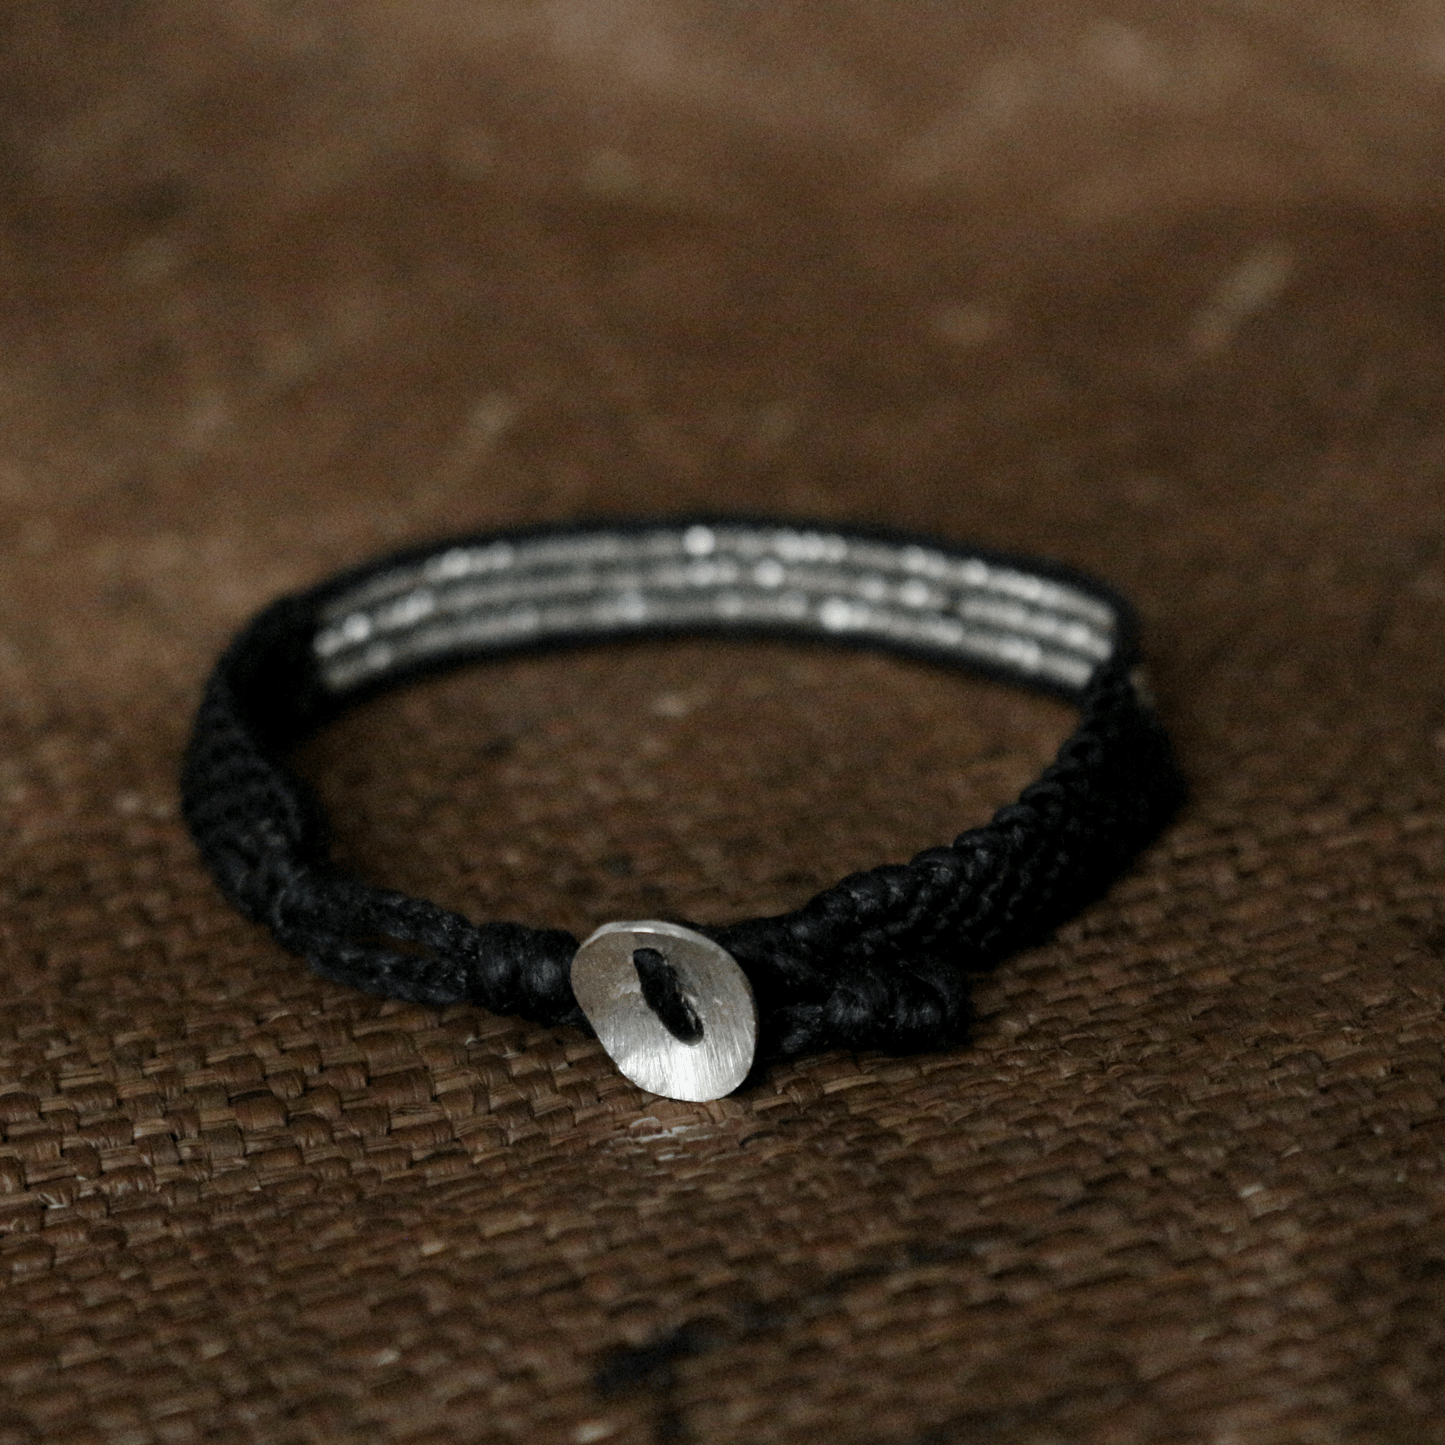 Woven sterling silver bracelet